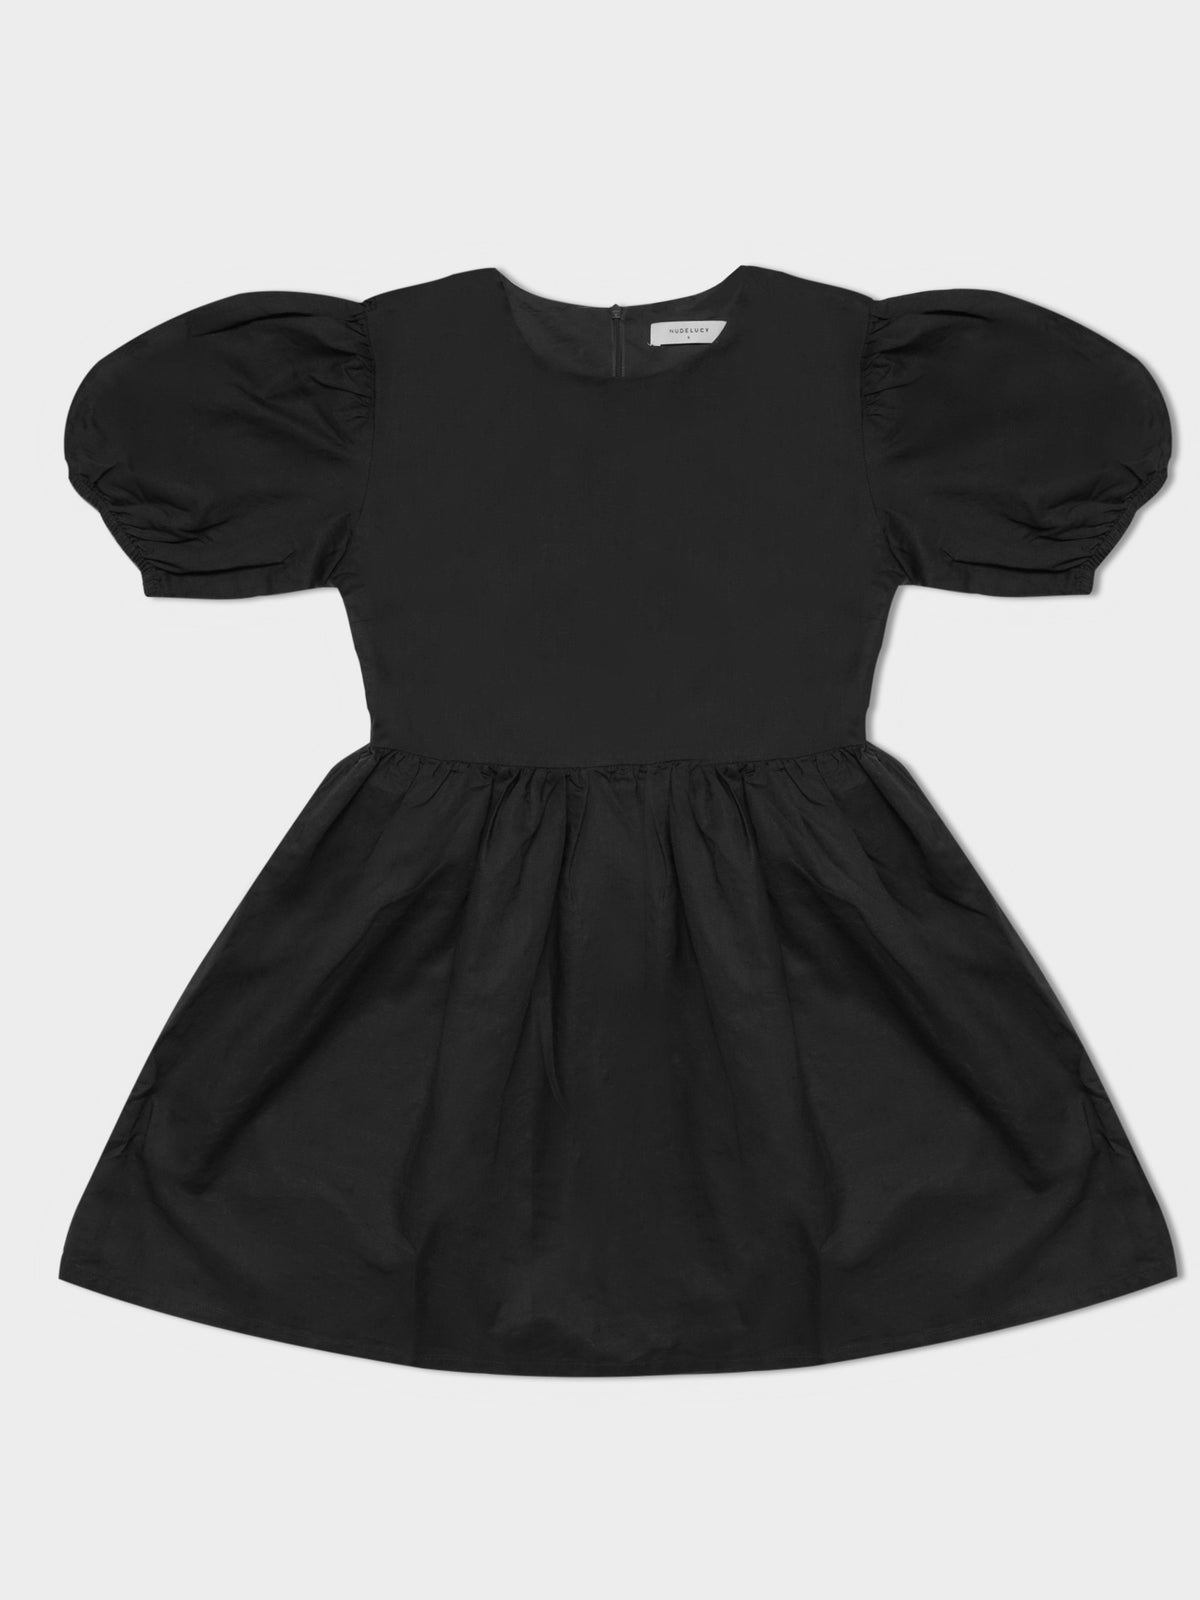 Nima Linen Mini Dress in Coal